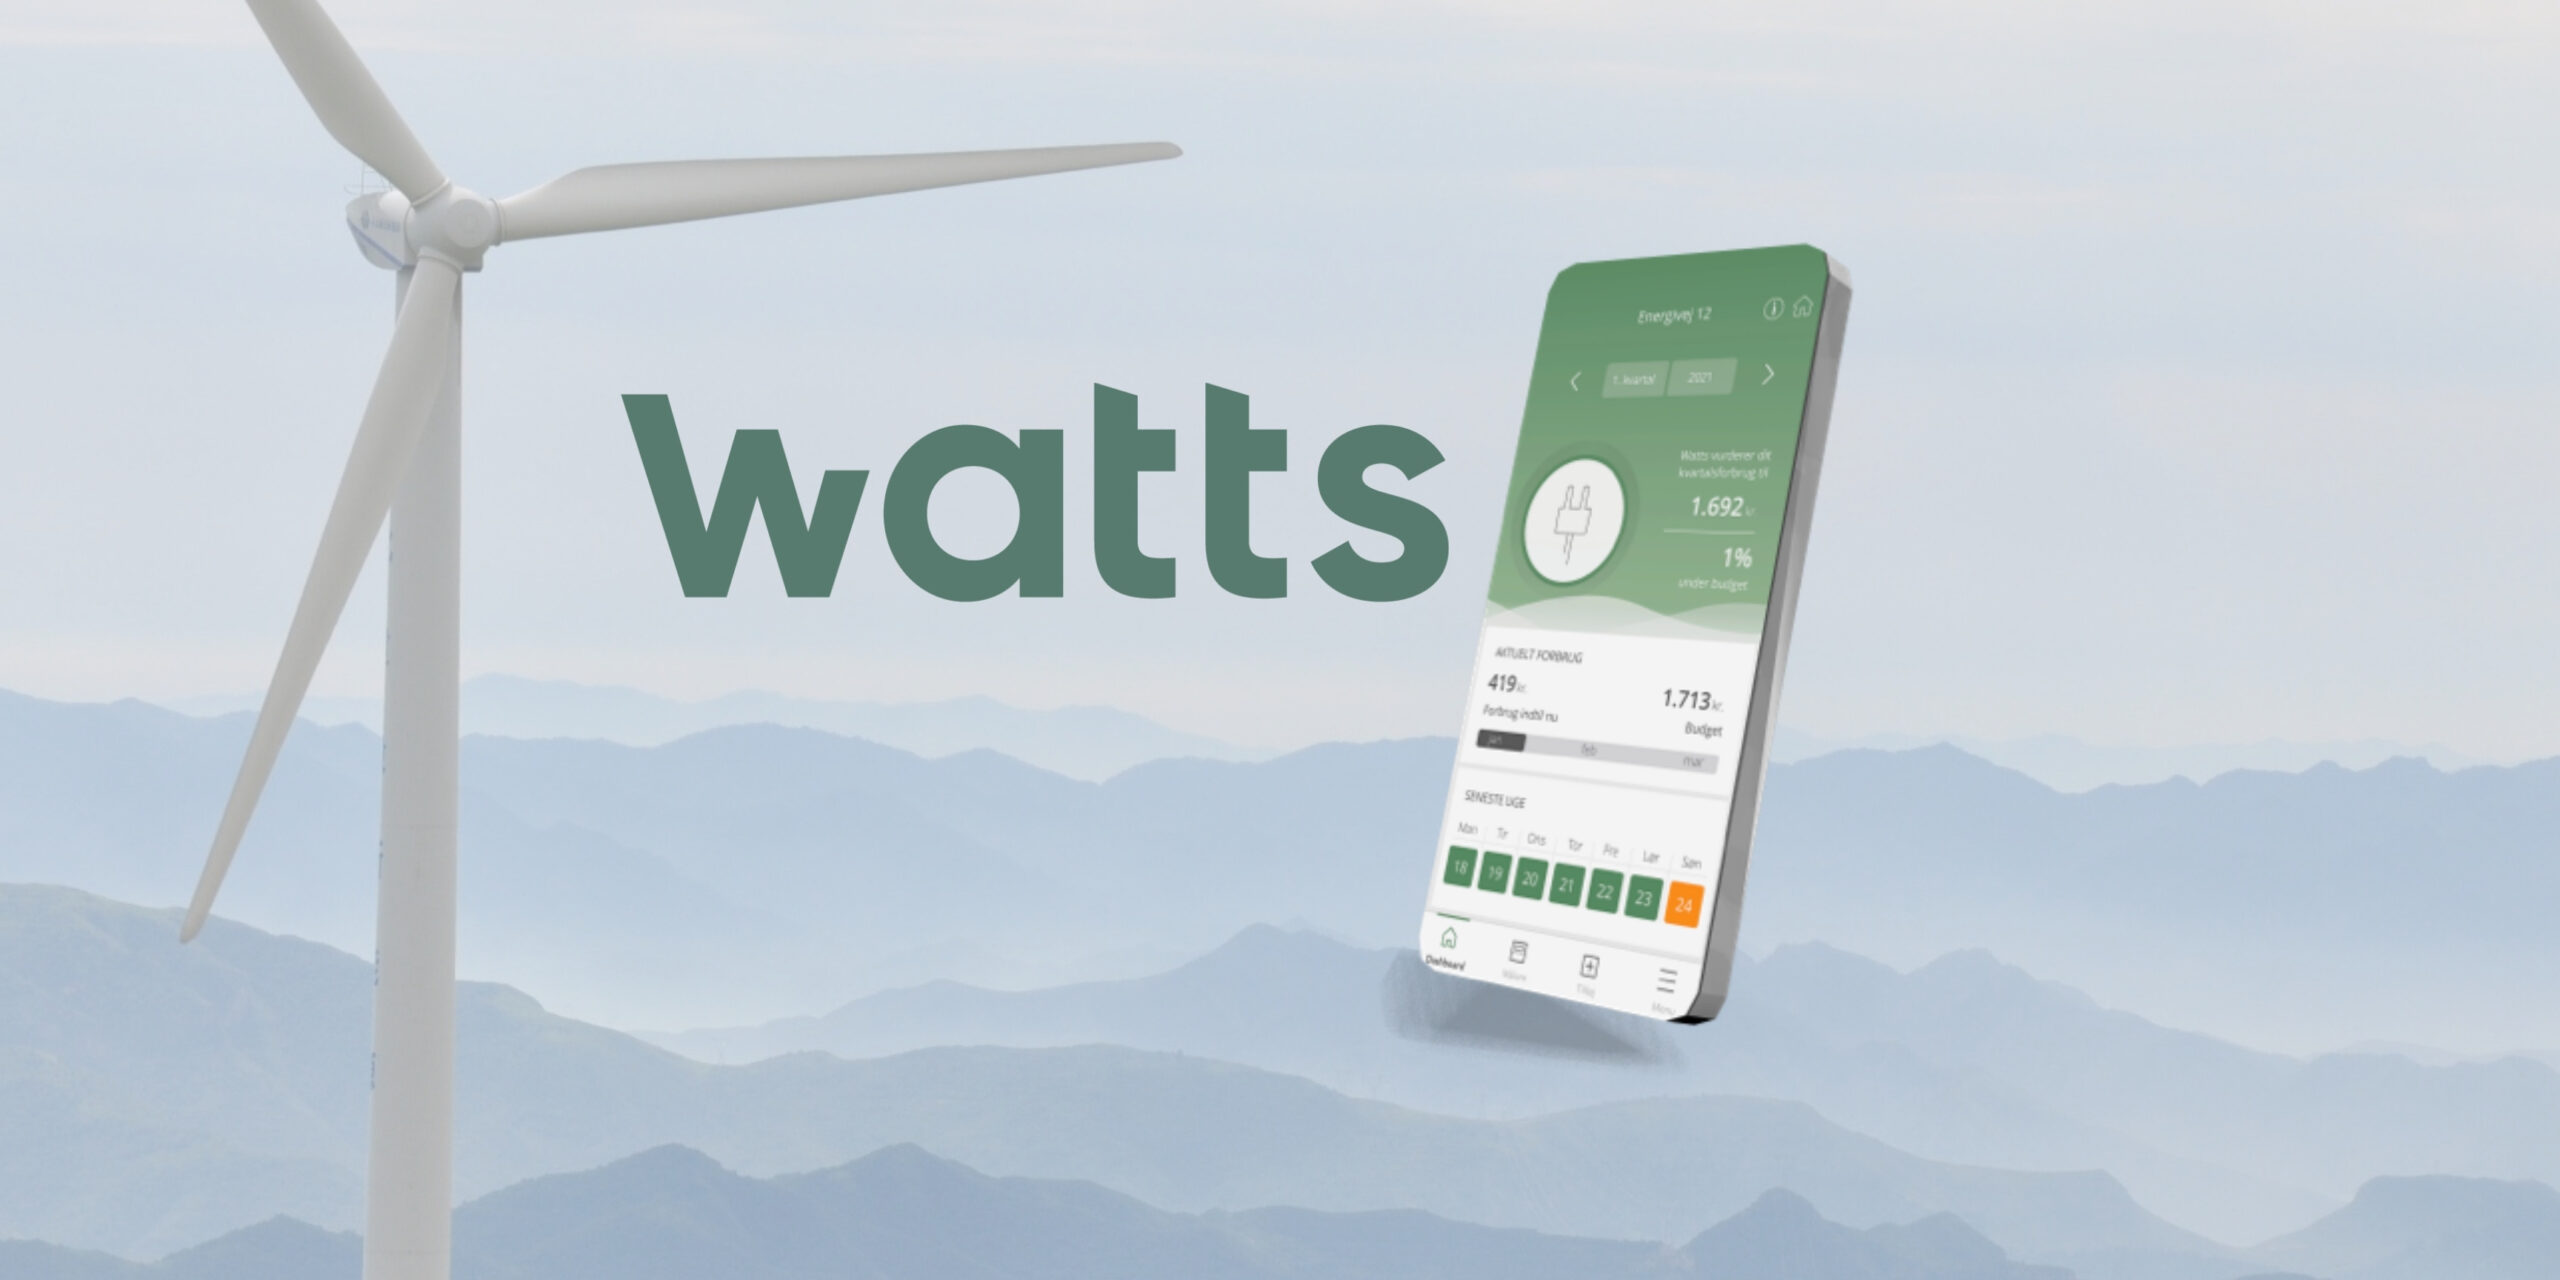 Become hjælper med at udbrede kendskab til energi-app’en Watts